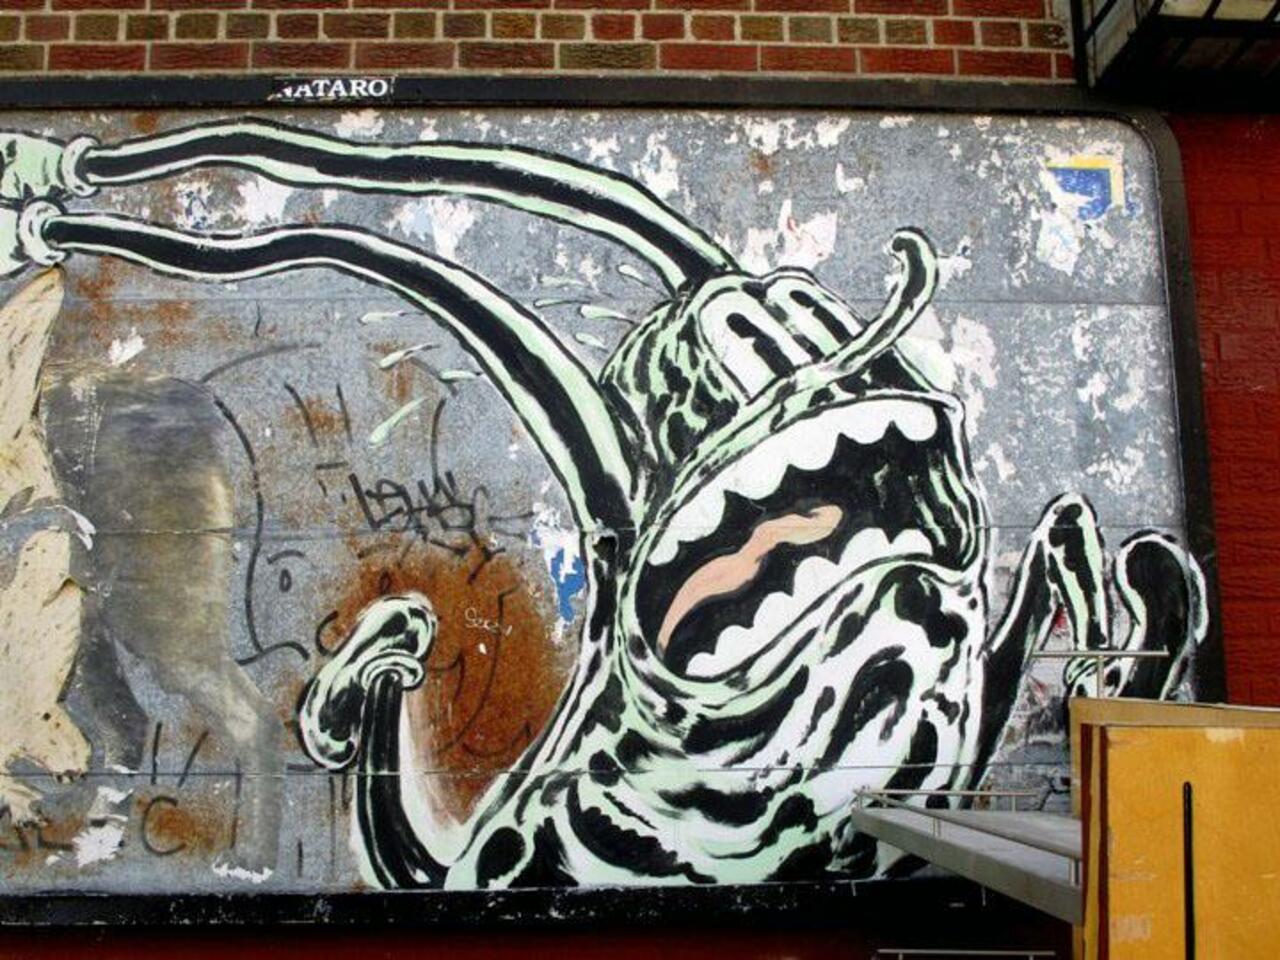 - Indie Underground - Street Art Brooklyn, NY - #art #graffiti #graff #streetart #painting http://t.co/7s30a3JHDB